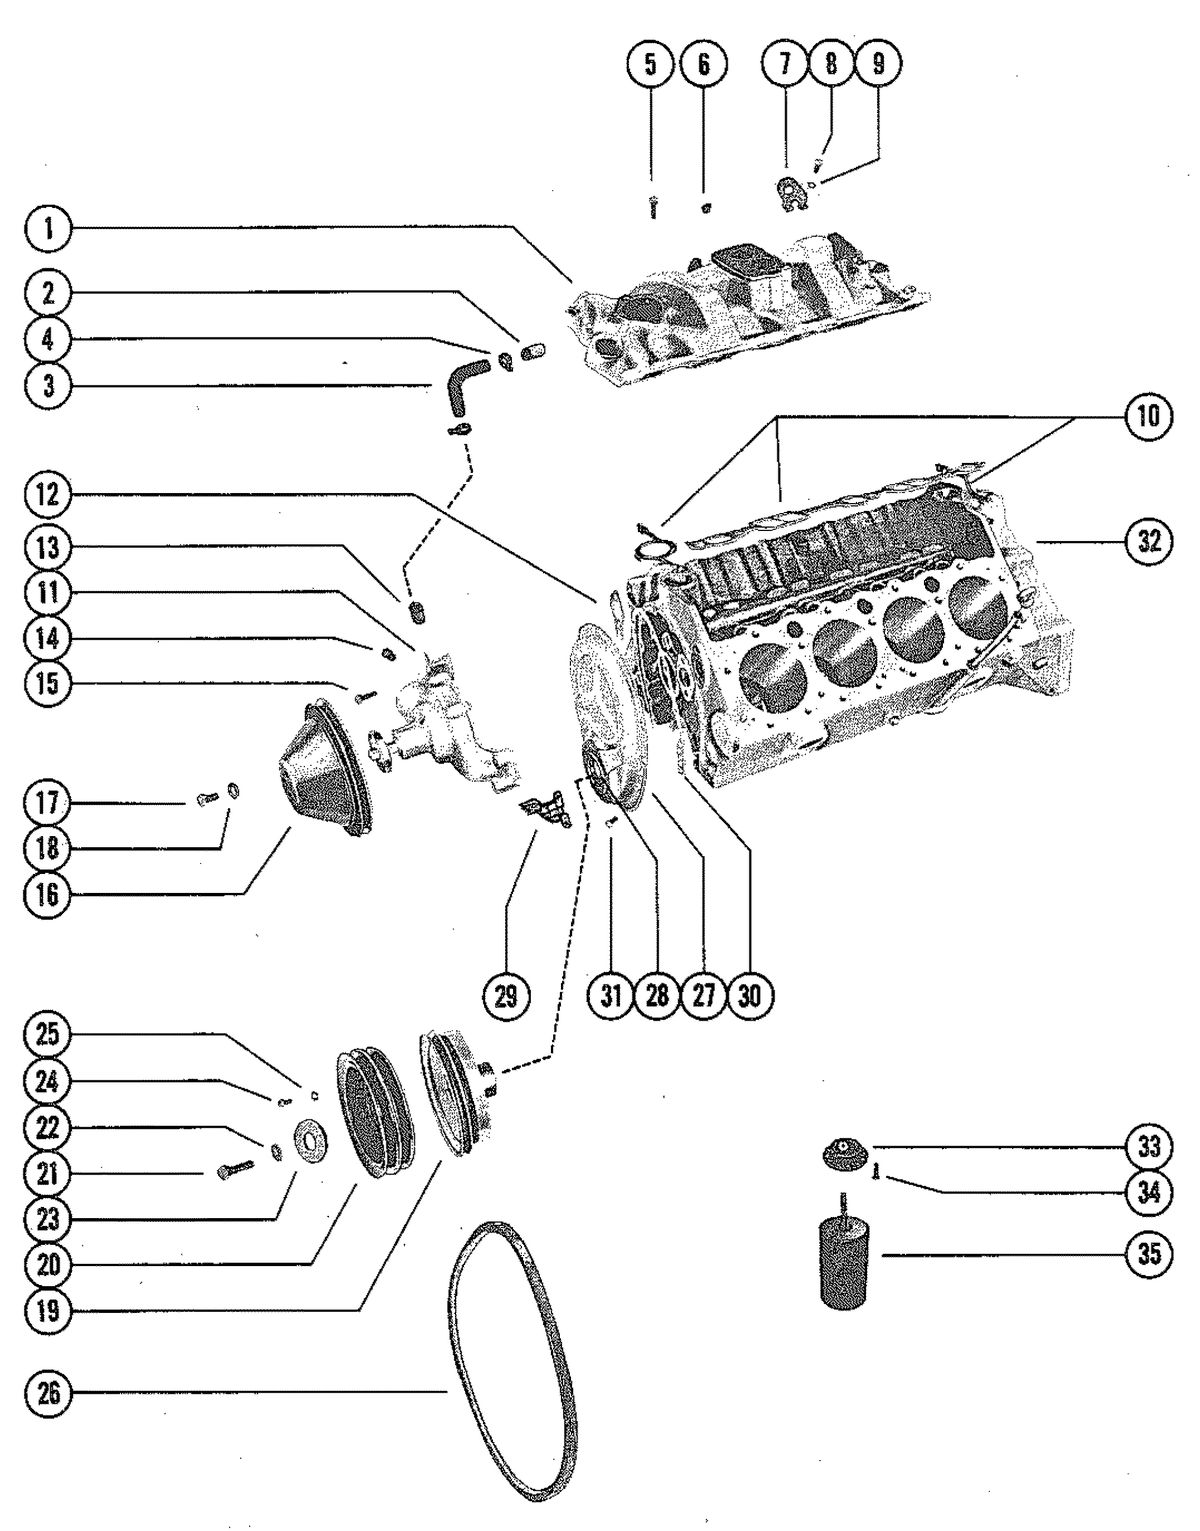 MERCRUISER 330 ENGINE (G.M.) INTAKE MANIFOLD AND WATER PUMP